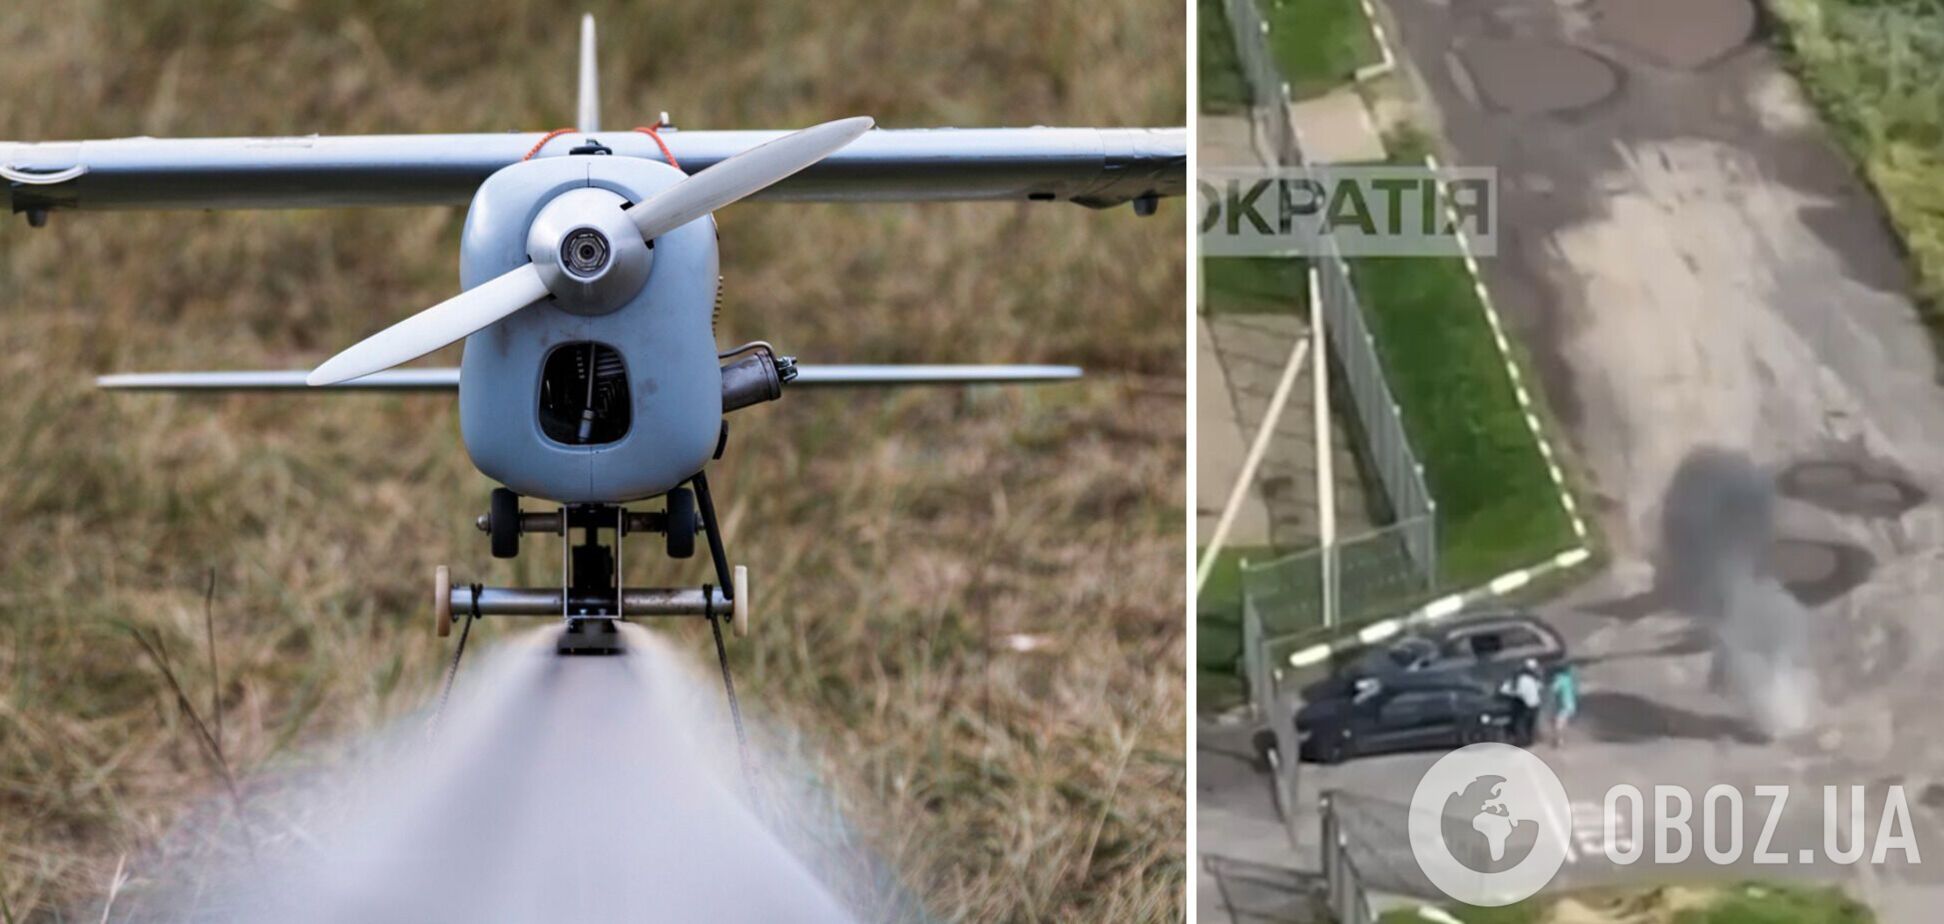 'Хлопок' в прямом эфире: в Брянской области РФ дрон 'денацифицировал' трех сотрудников ФСБ. Видео